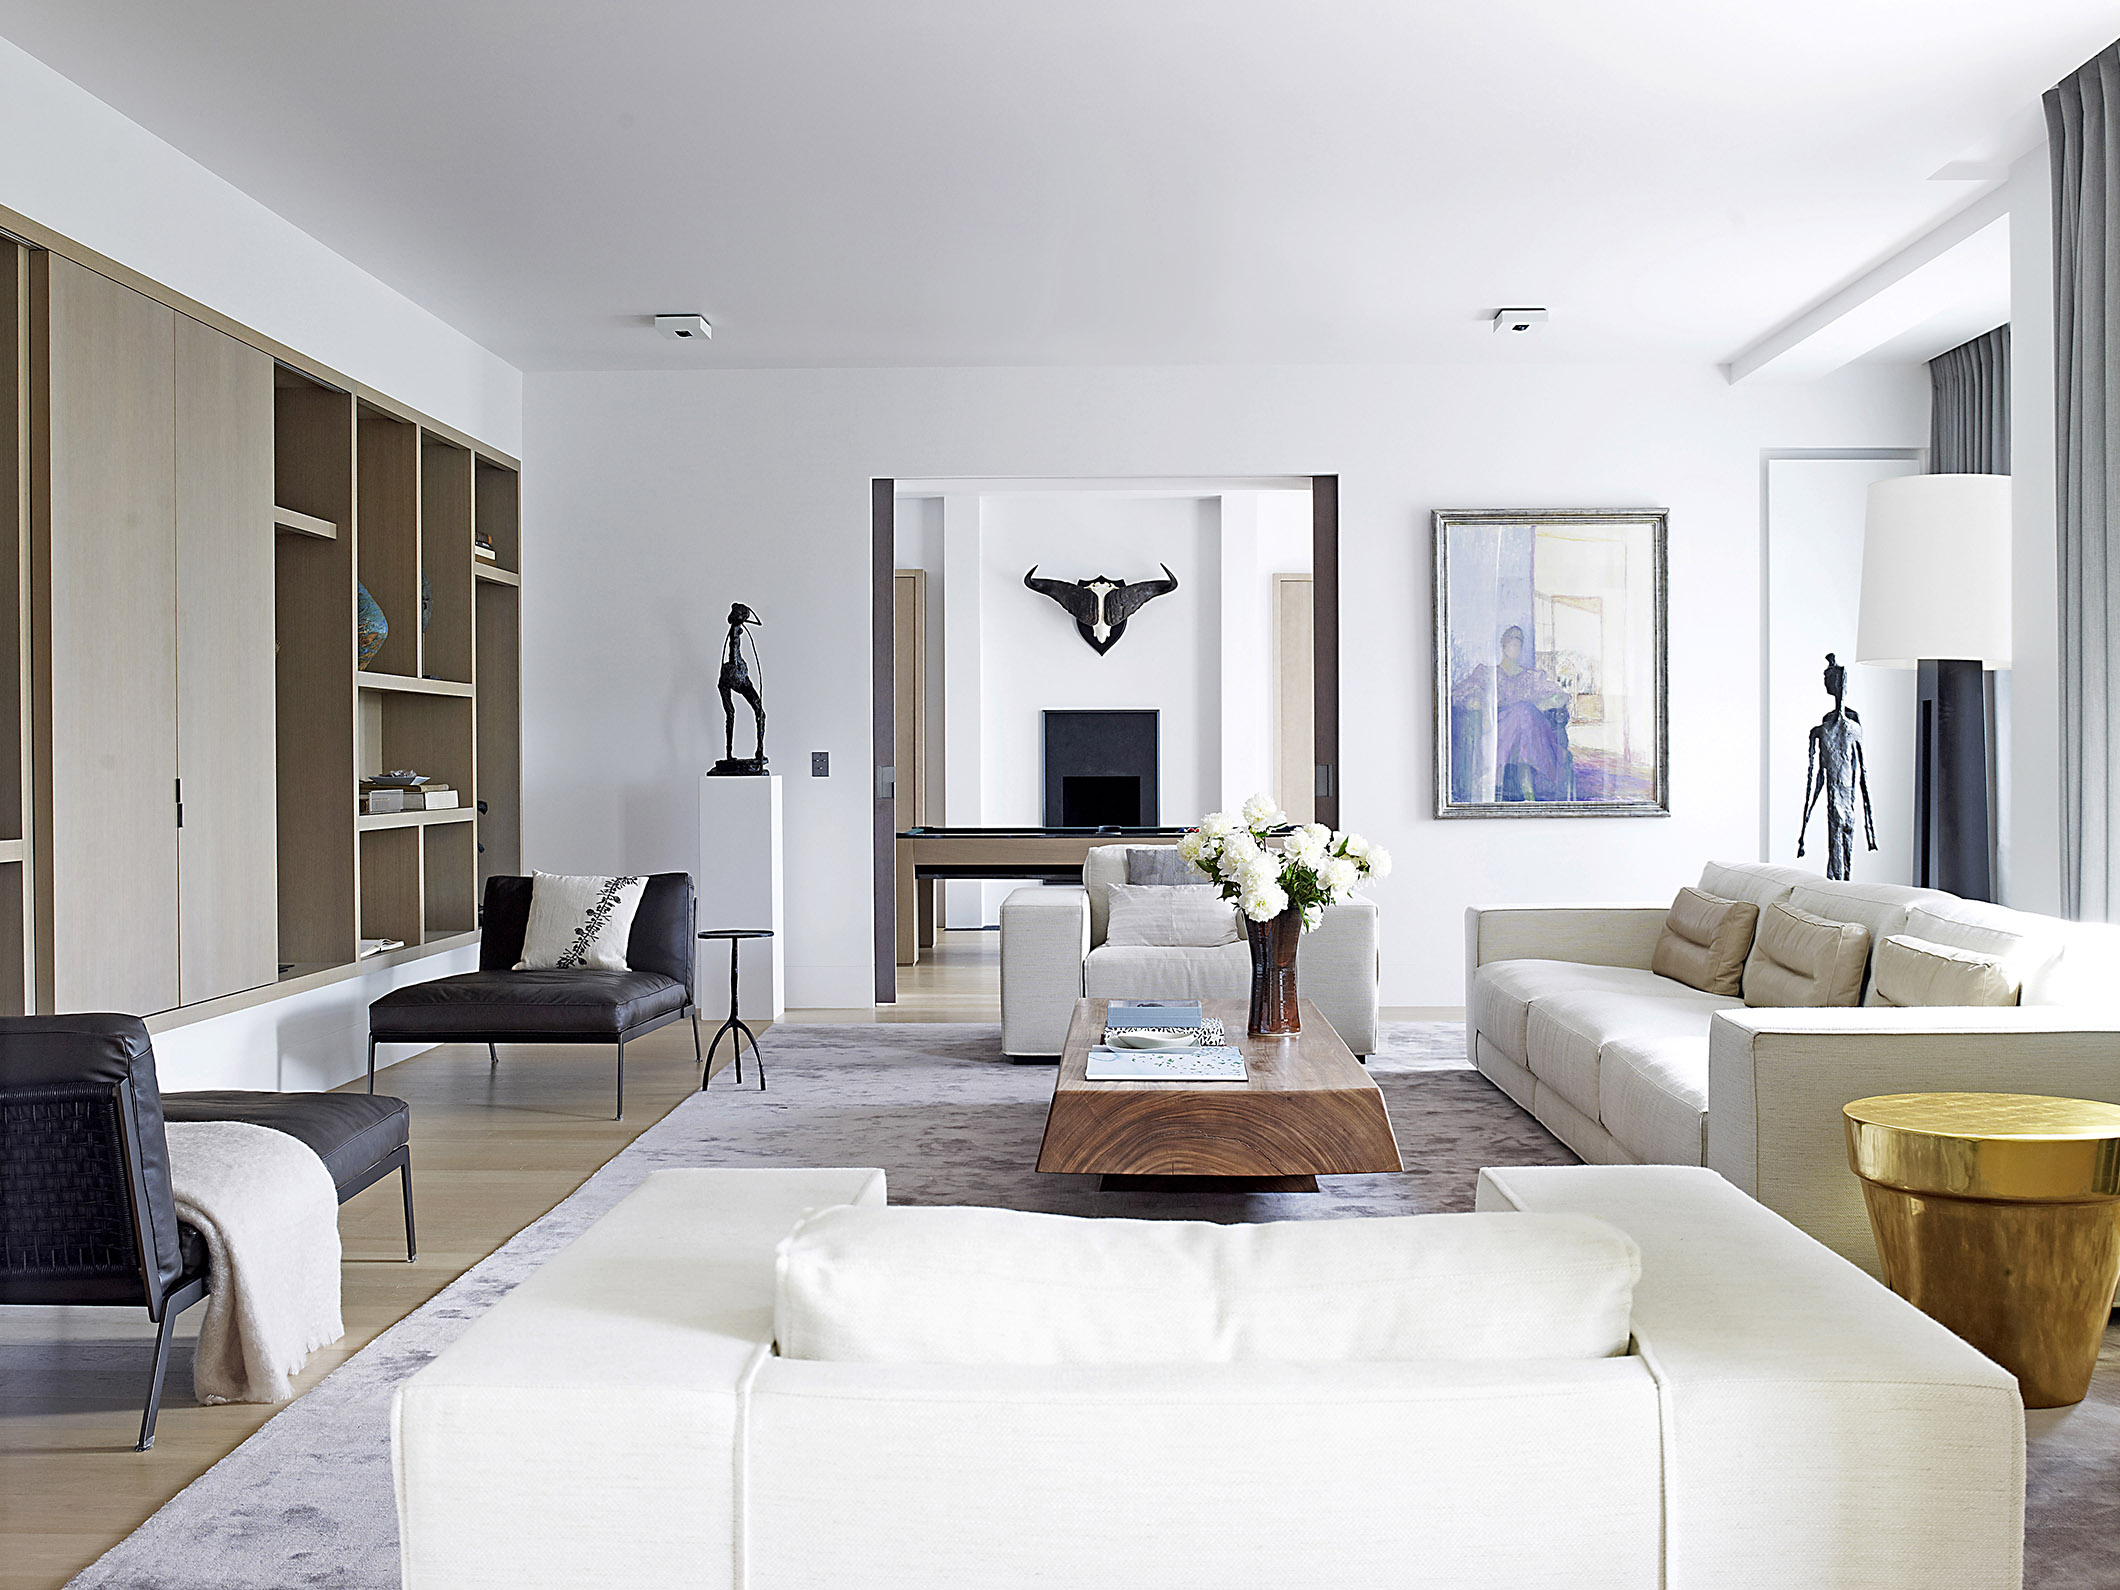 客厅空间布局注重秩序感，白色布艺沙发搭配实木茶几，空间平静和美好。